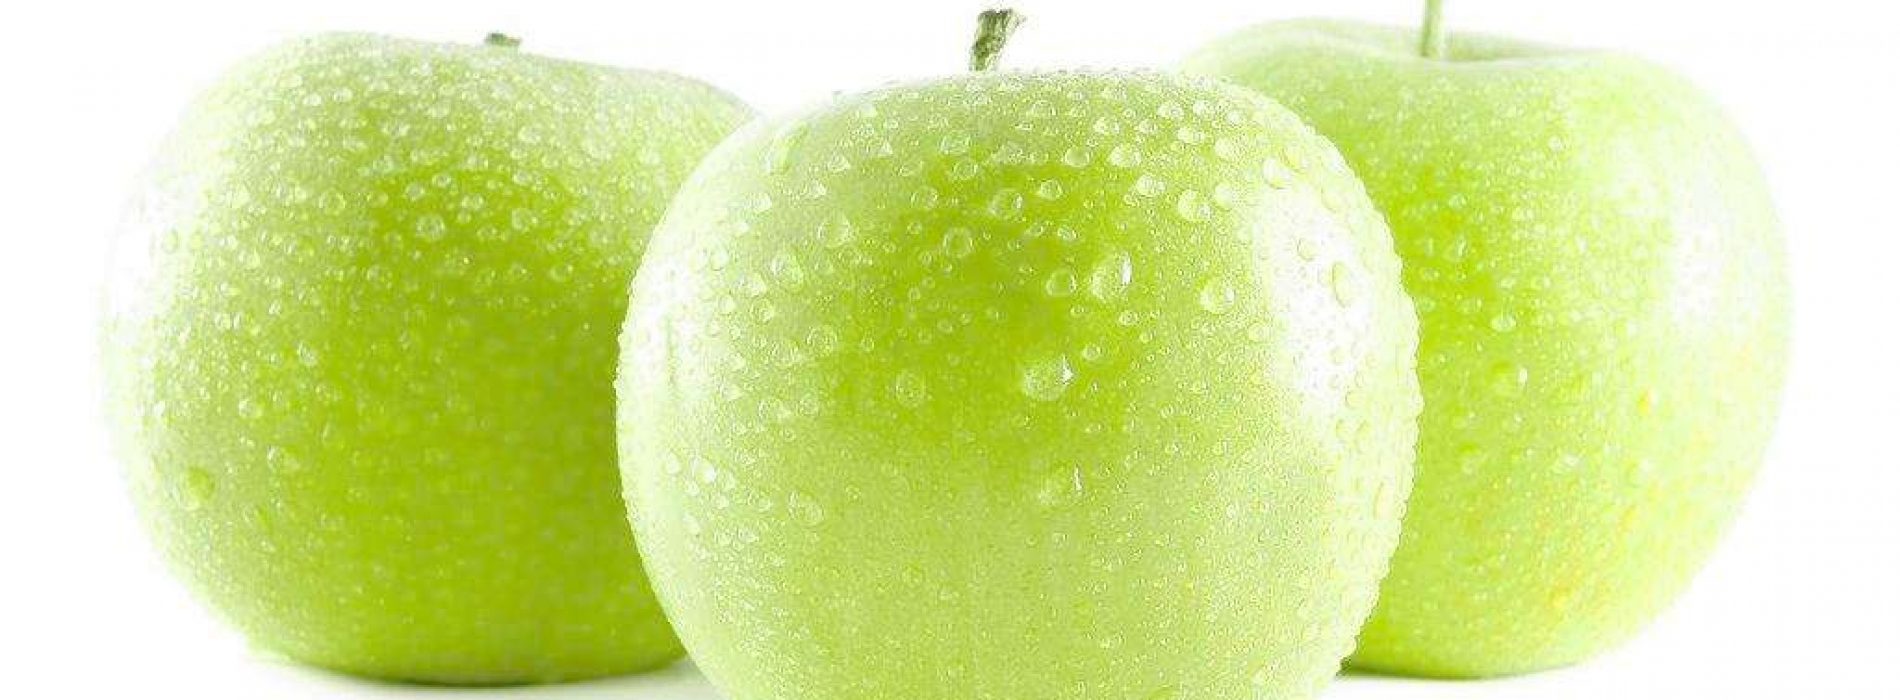 Appel-extract kan de regeneratie van stamcellen bevorderen en de homeostase helpen handhaven